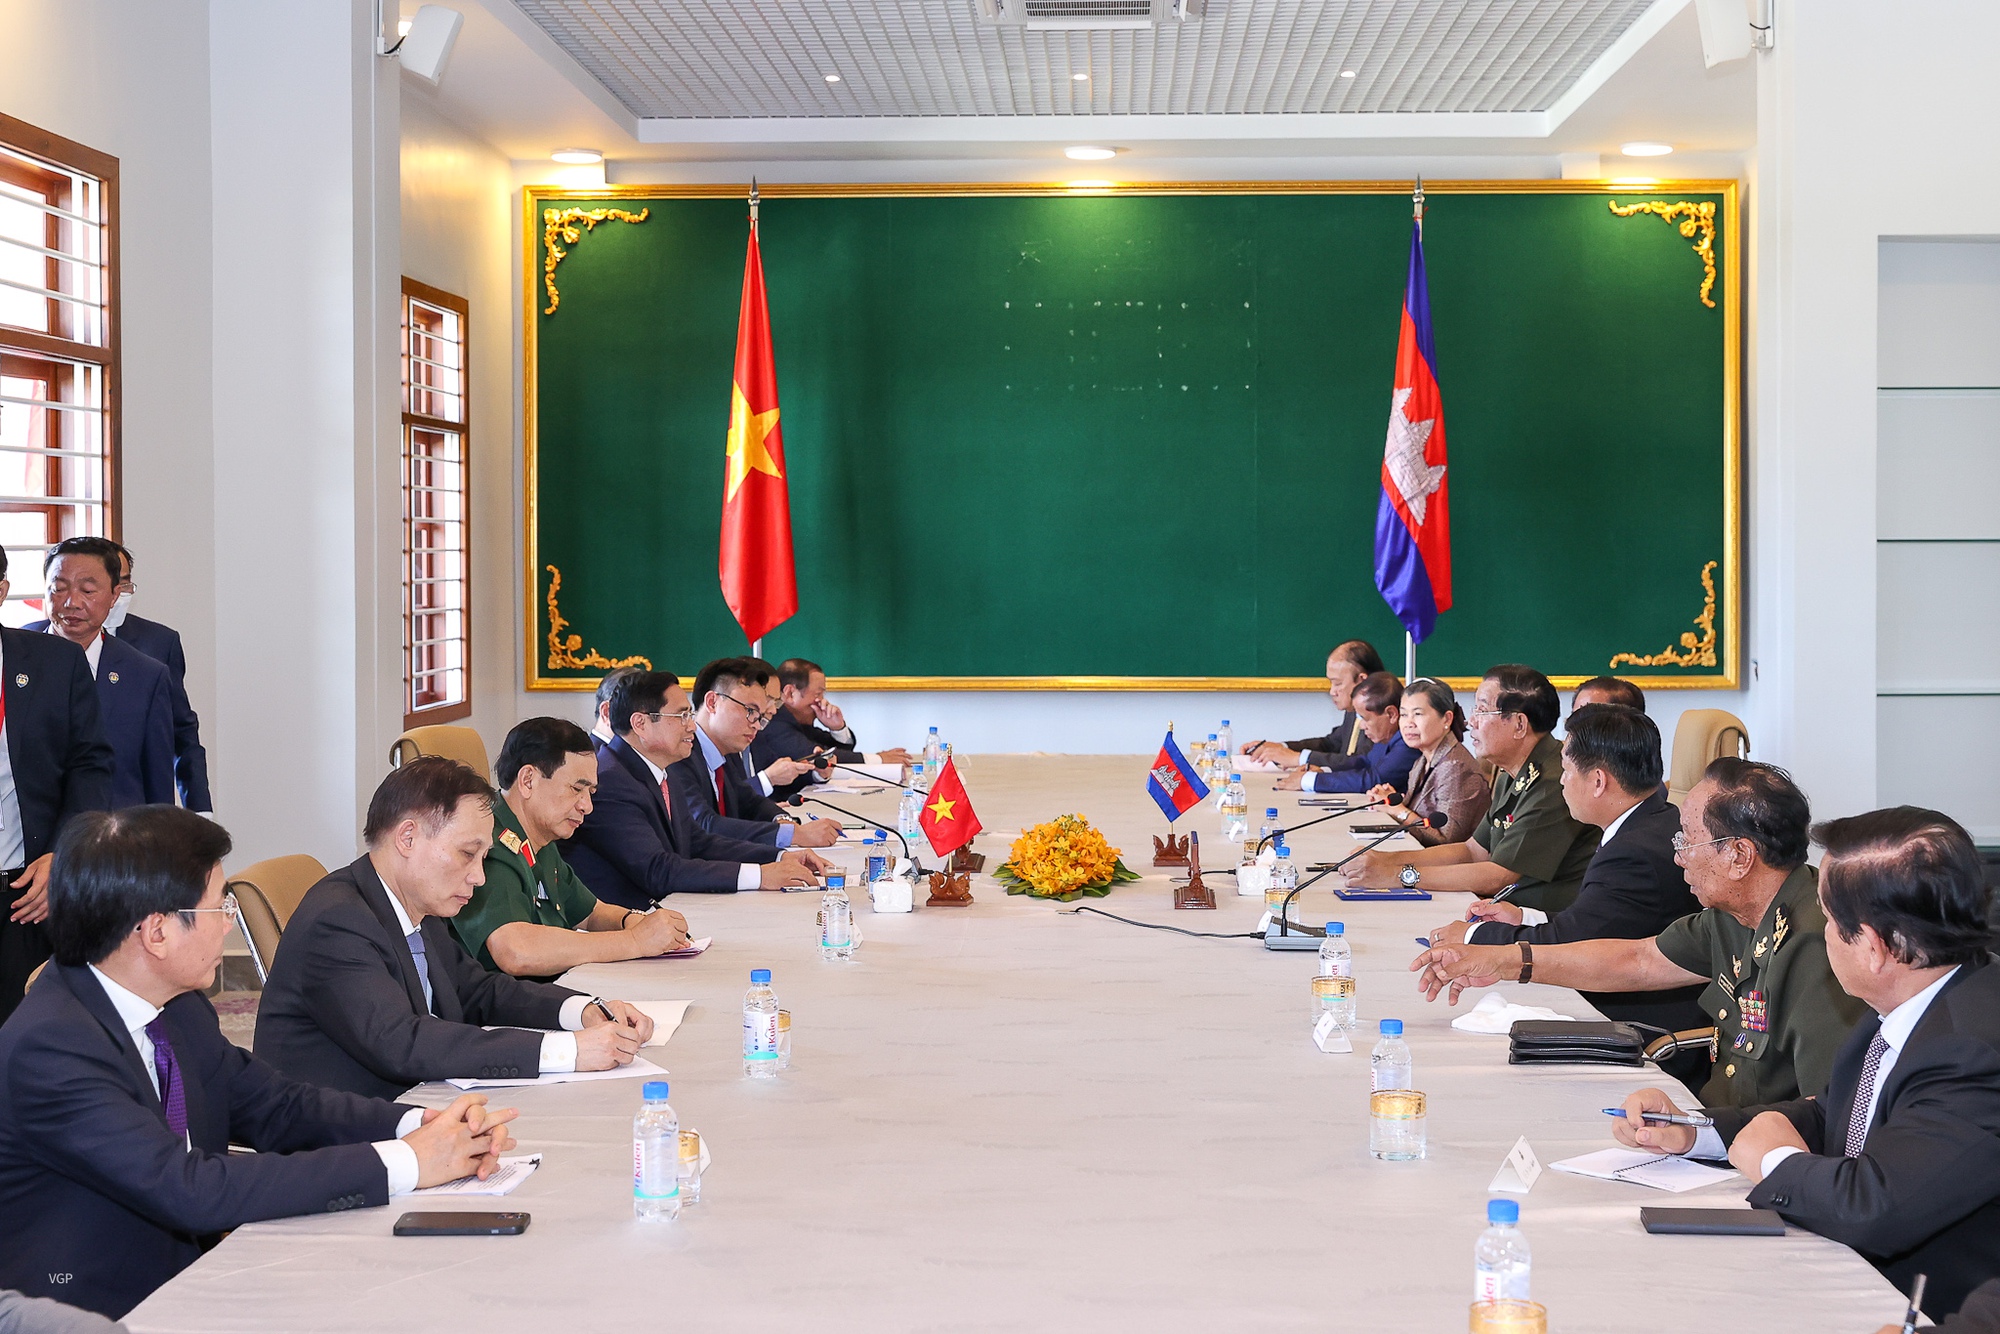 Thủ tướng Campuchia: Luôn ghi nhớ sự giúp đỡ của Việt Nam trên hành trình lật đổ chế độ diệt chủng Pol Pot - Ảnh 9.